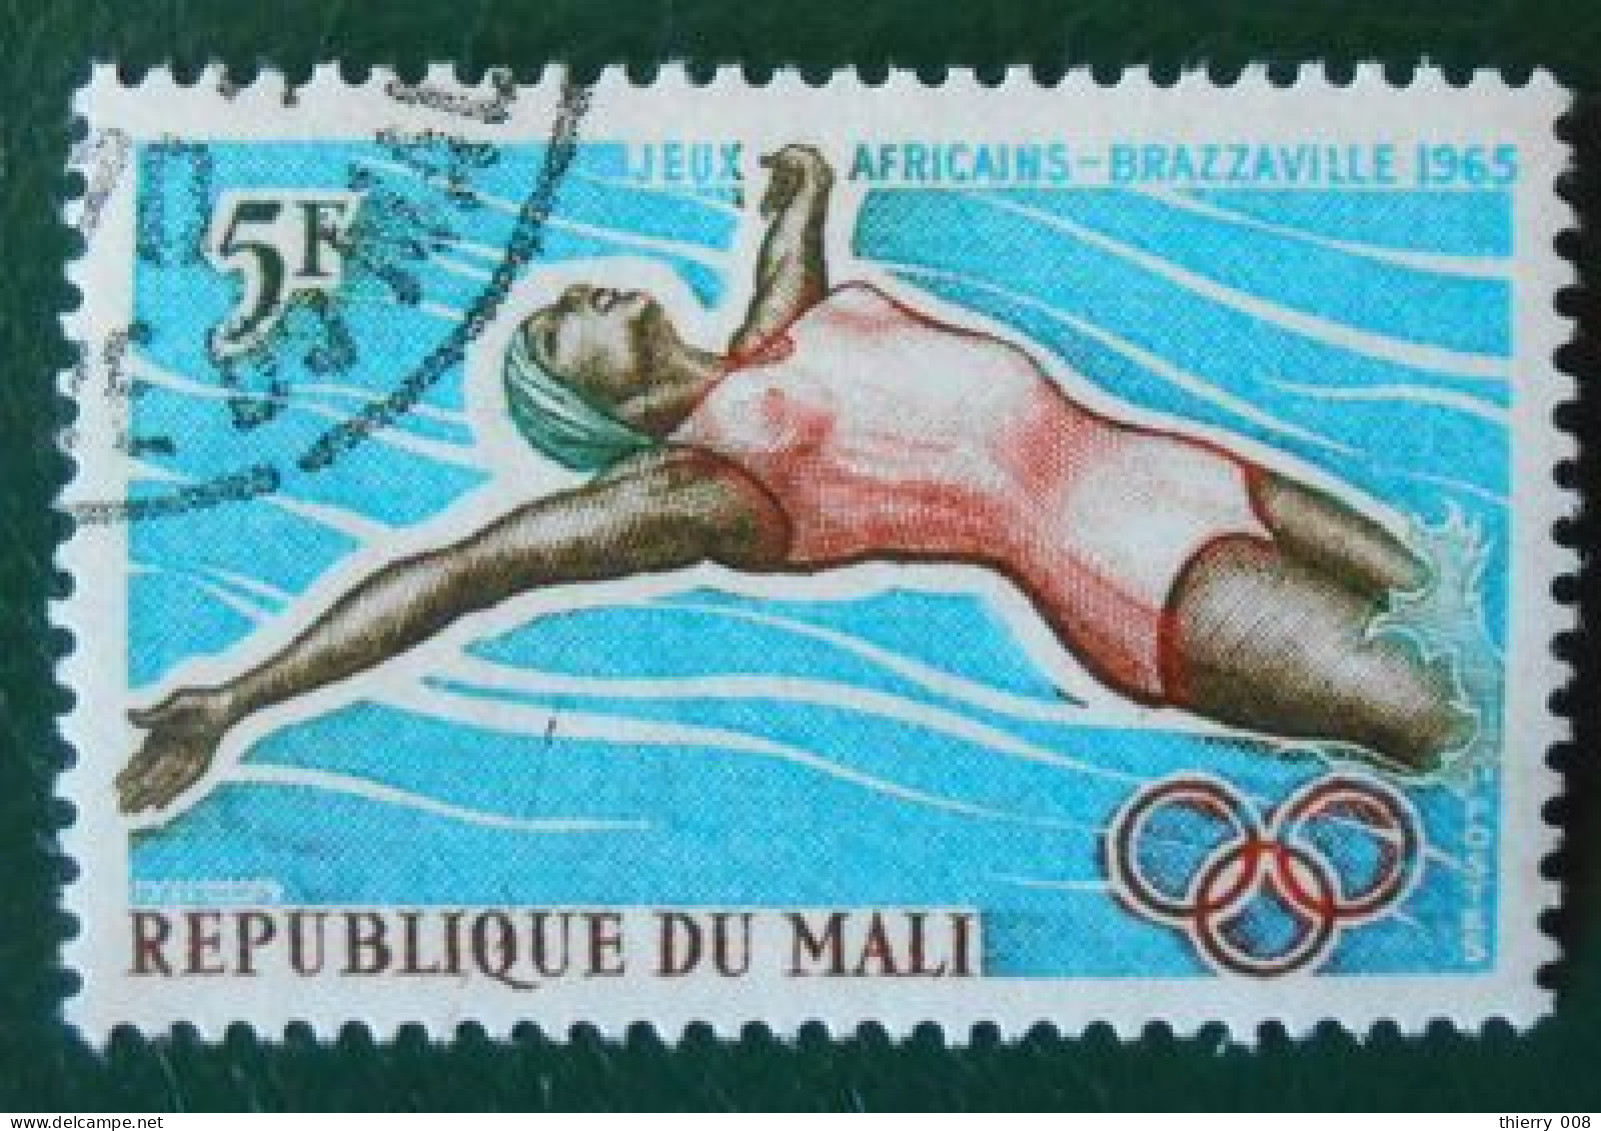 04 République Du Mali Jeux Africains Brazzaville 1965 Natation - Natation